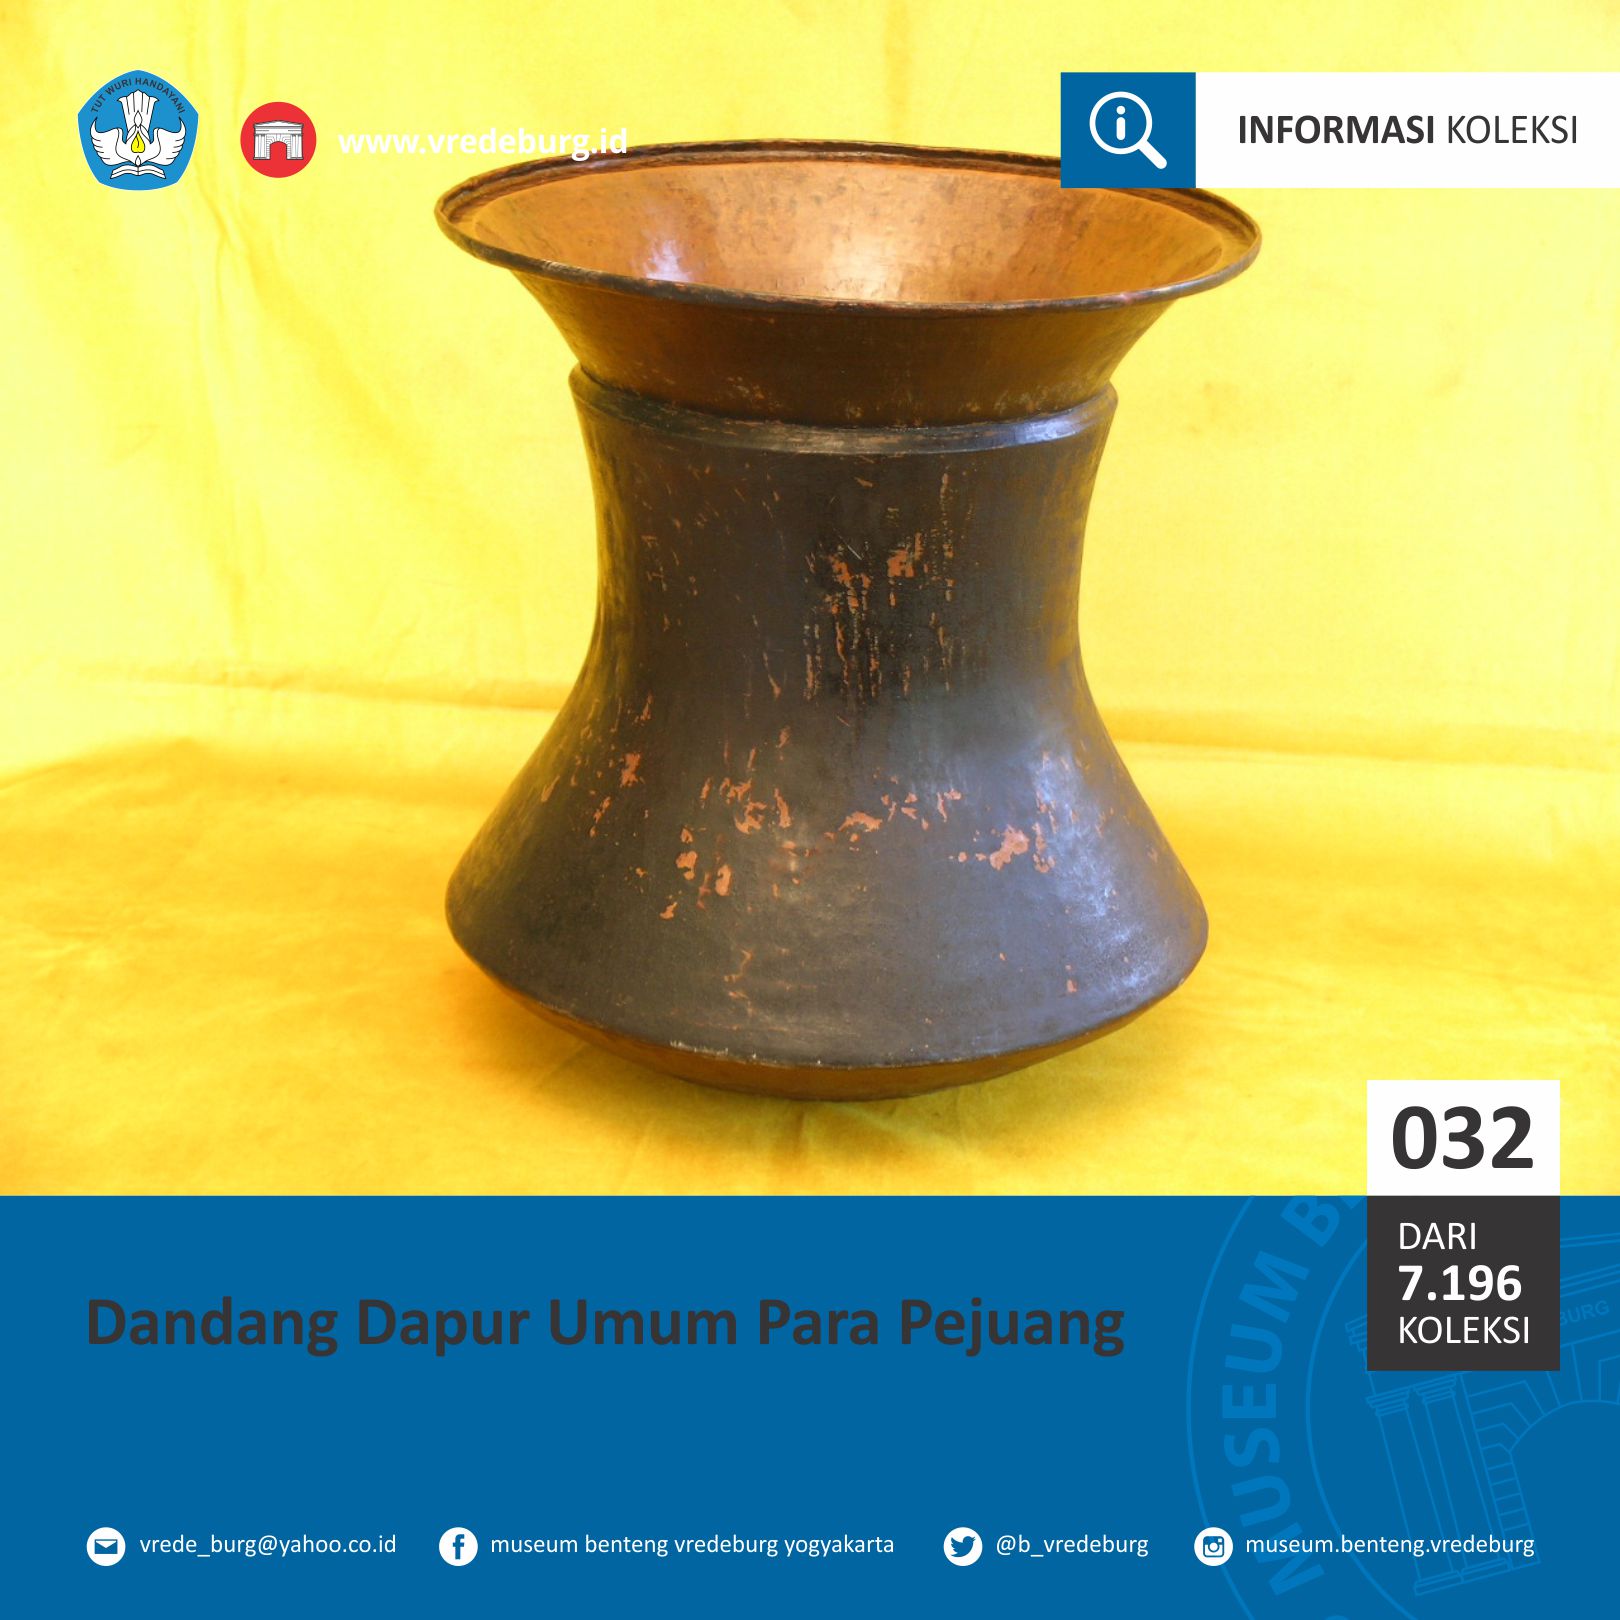 Read more about the article Dandang Dapur Umum Para Pejuang